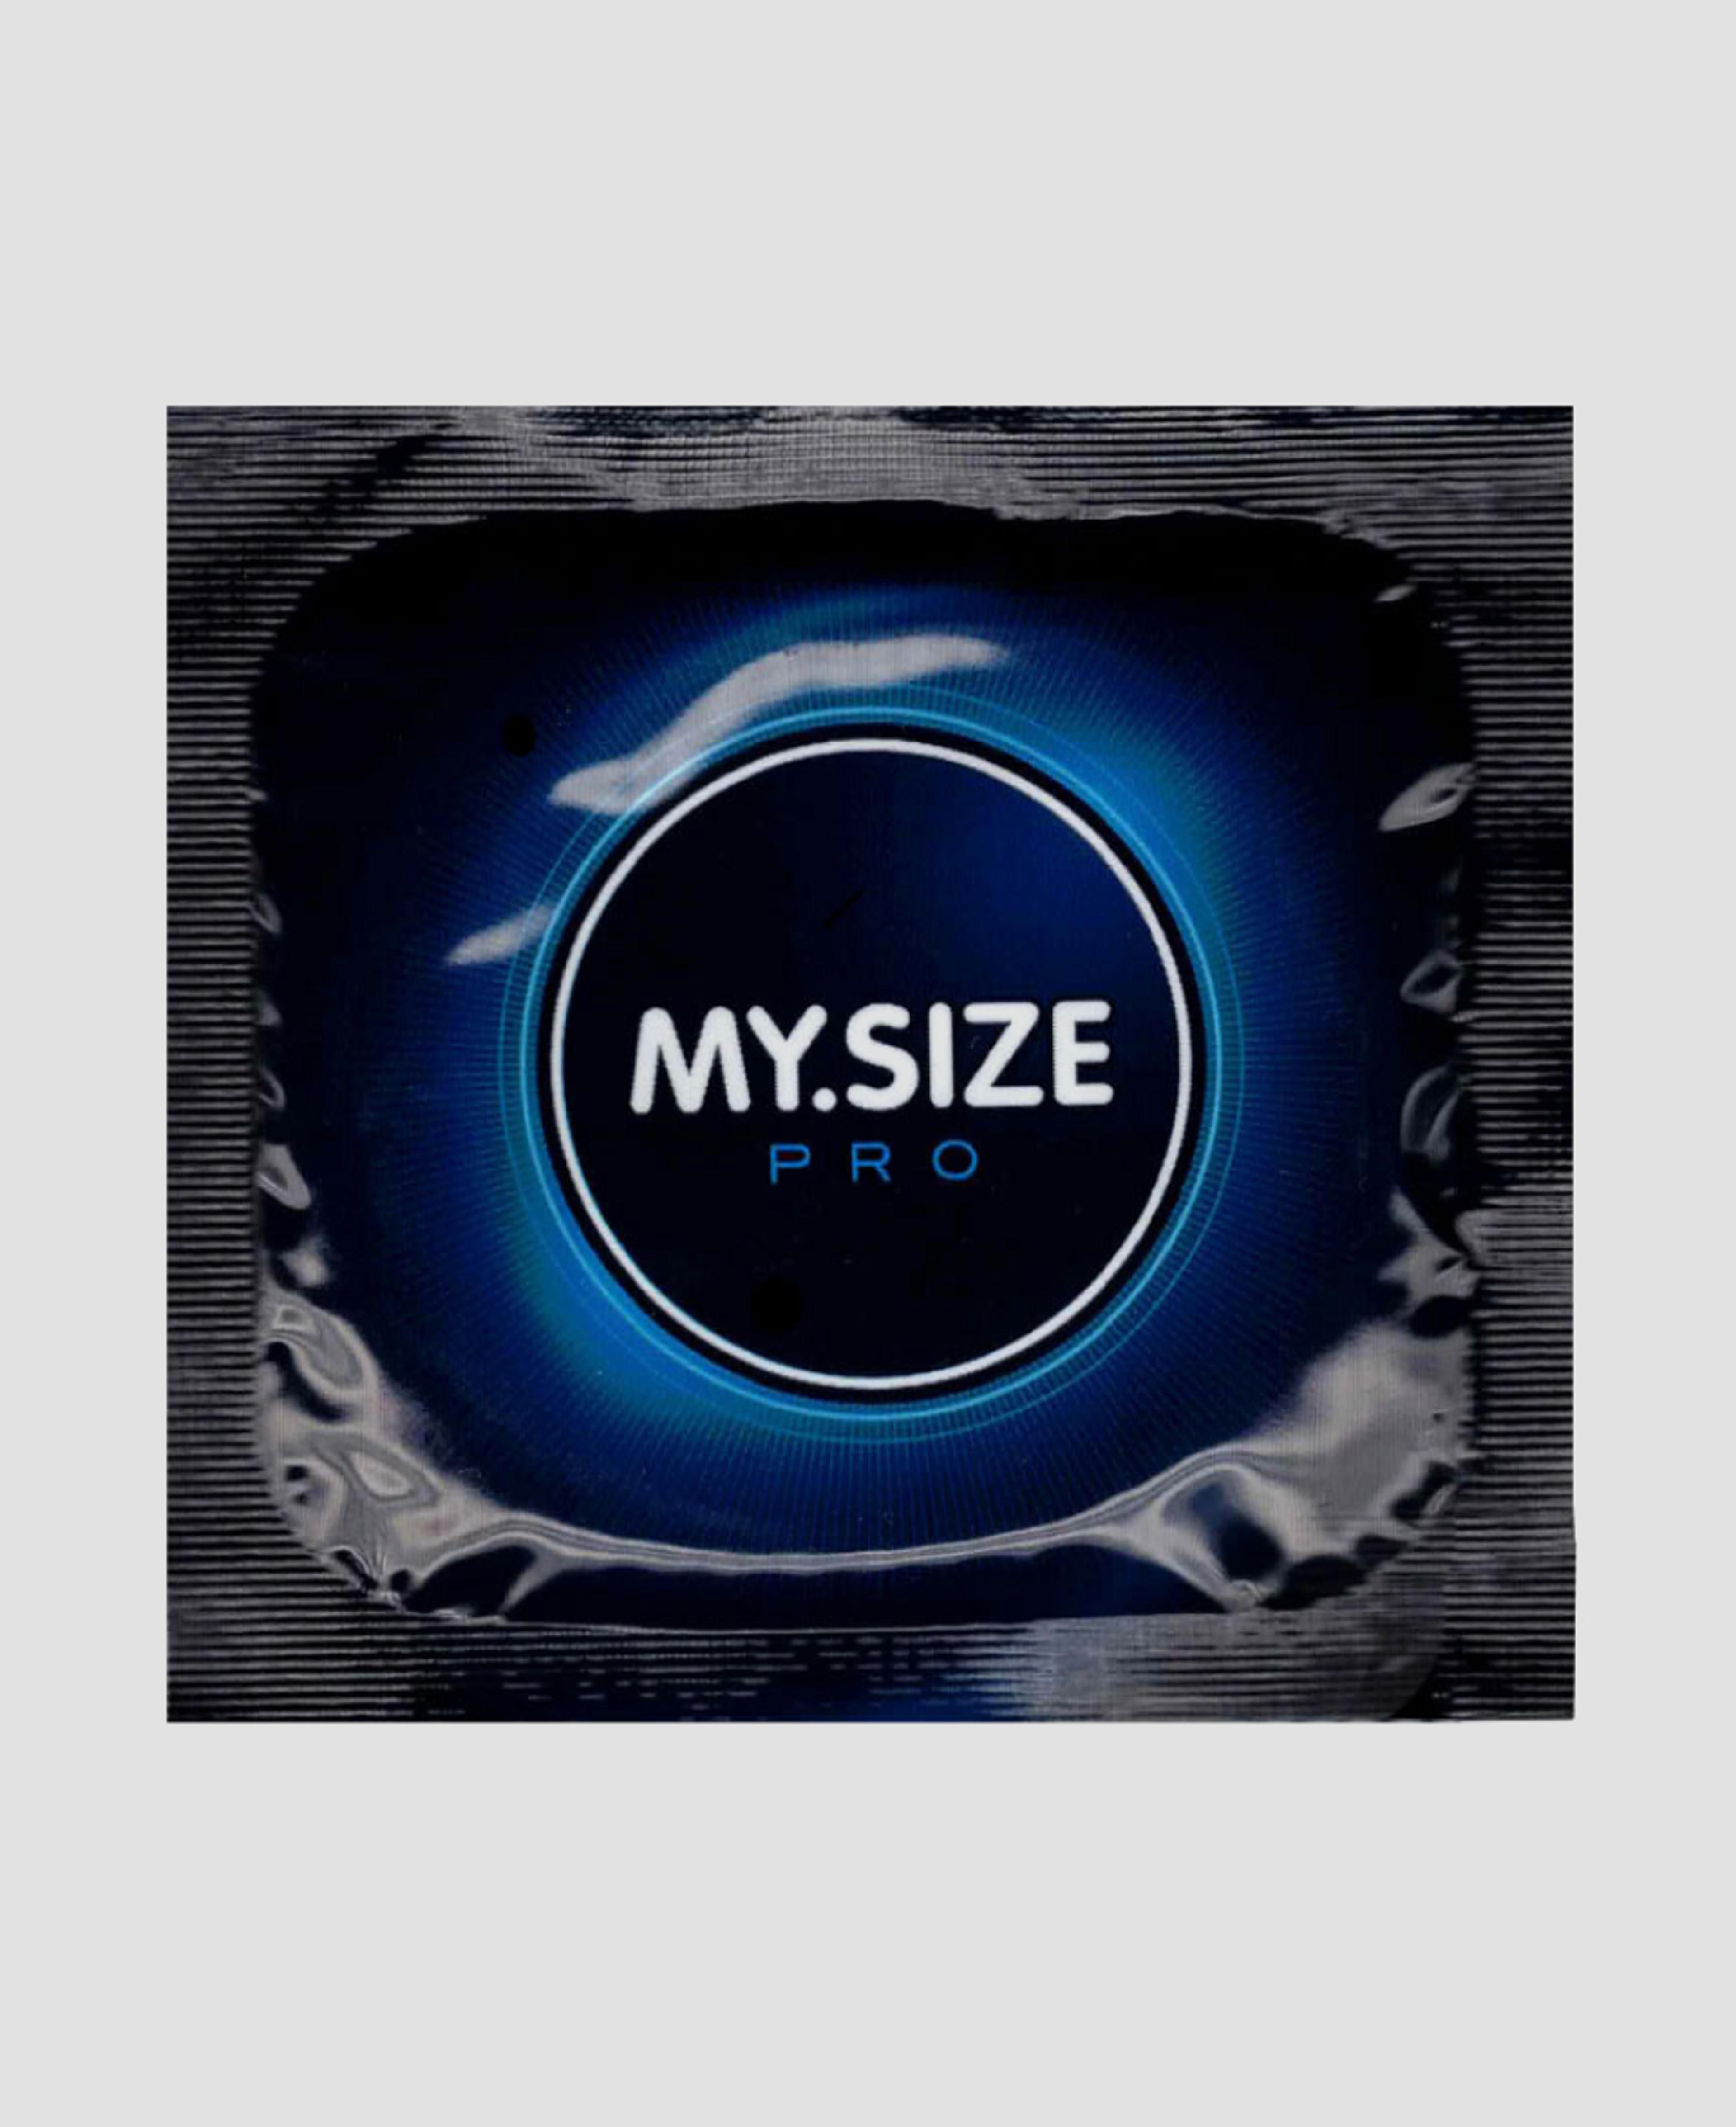 Презервативы My.size